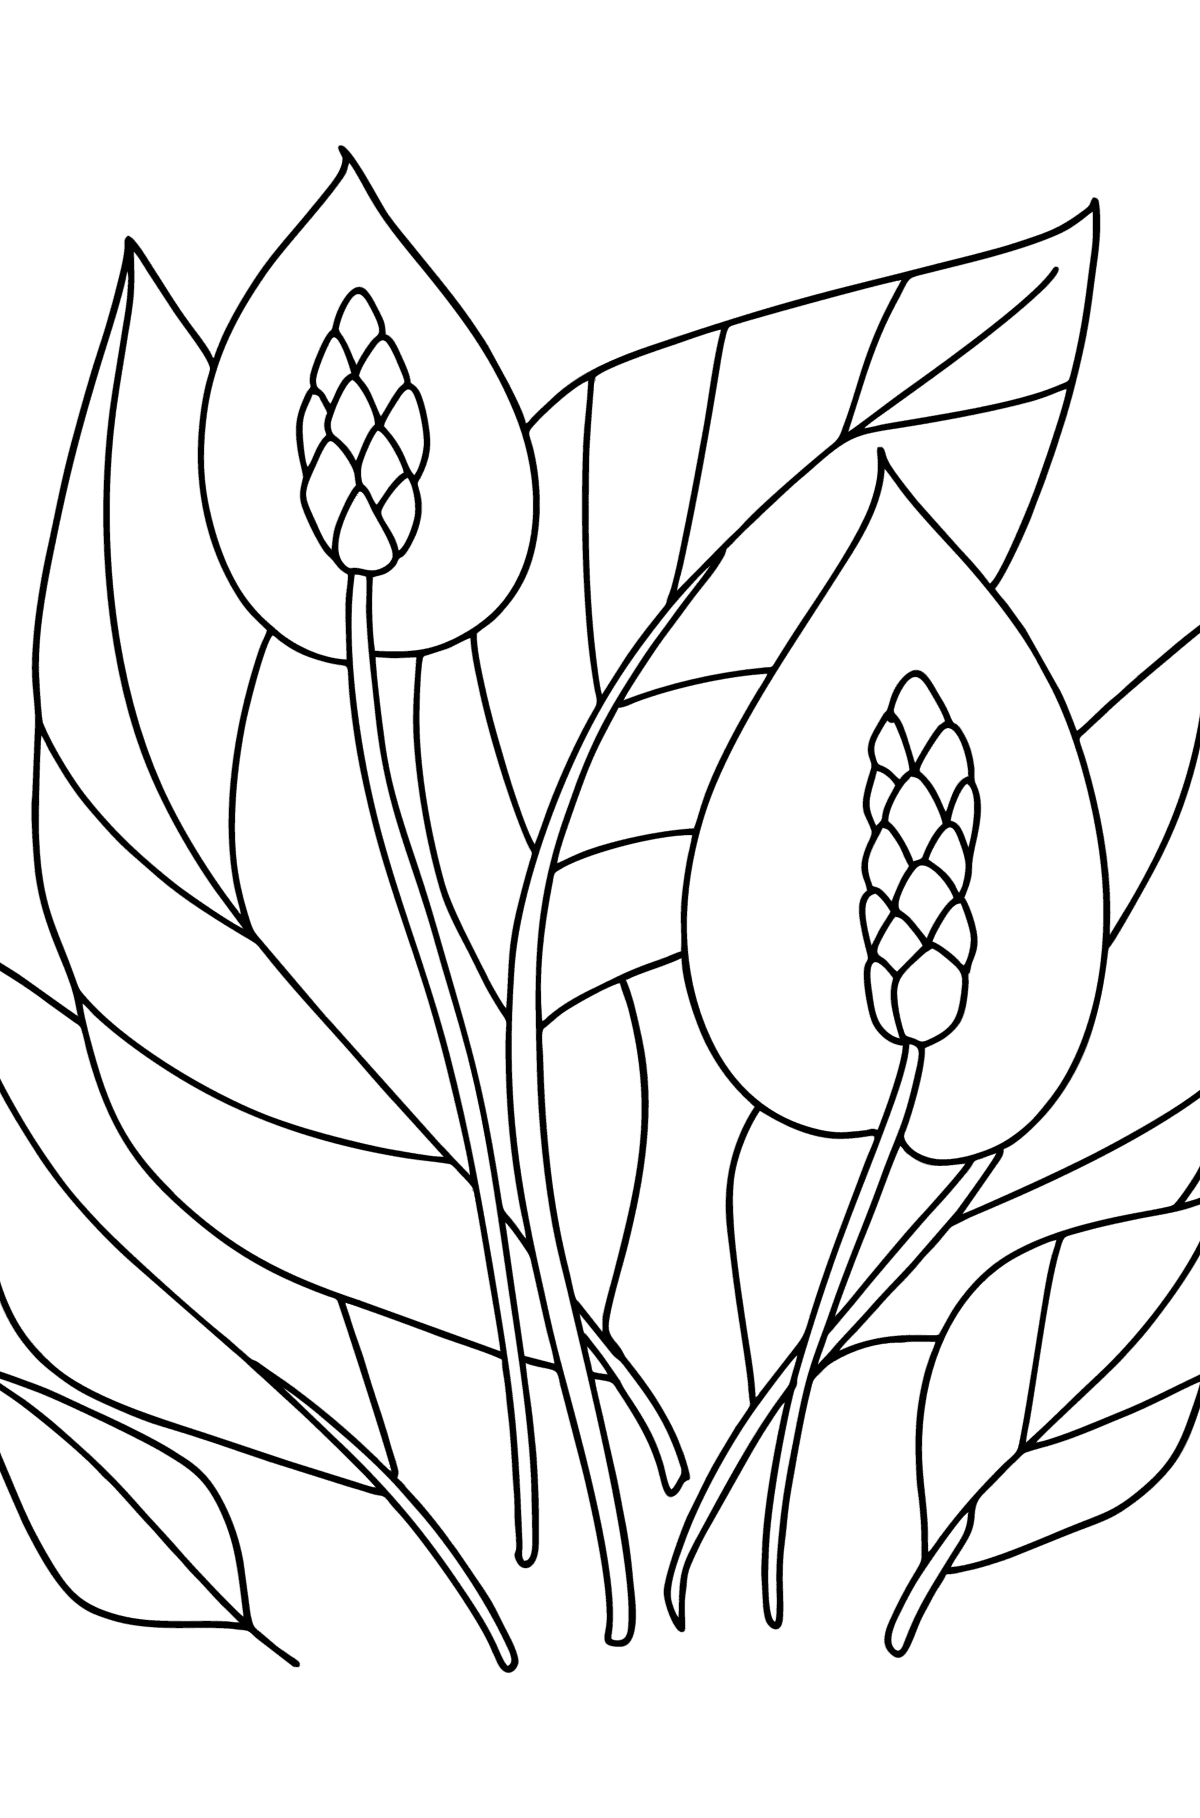 Coloriage Spathiphyllum - Coloriages pour les Enfants